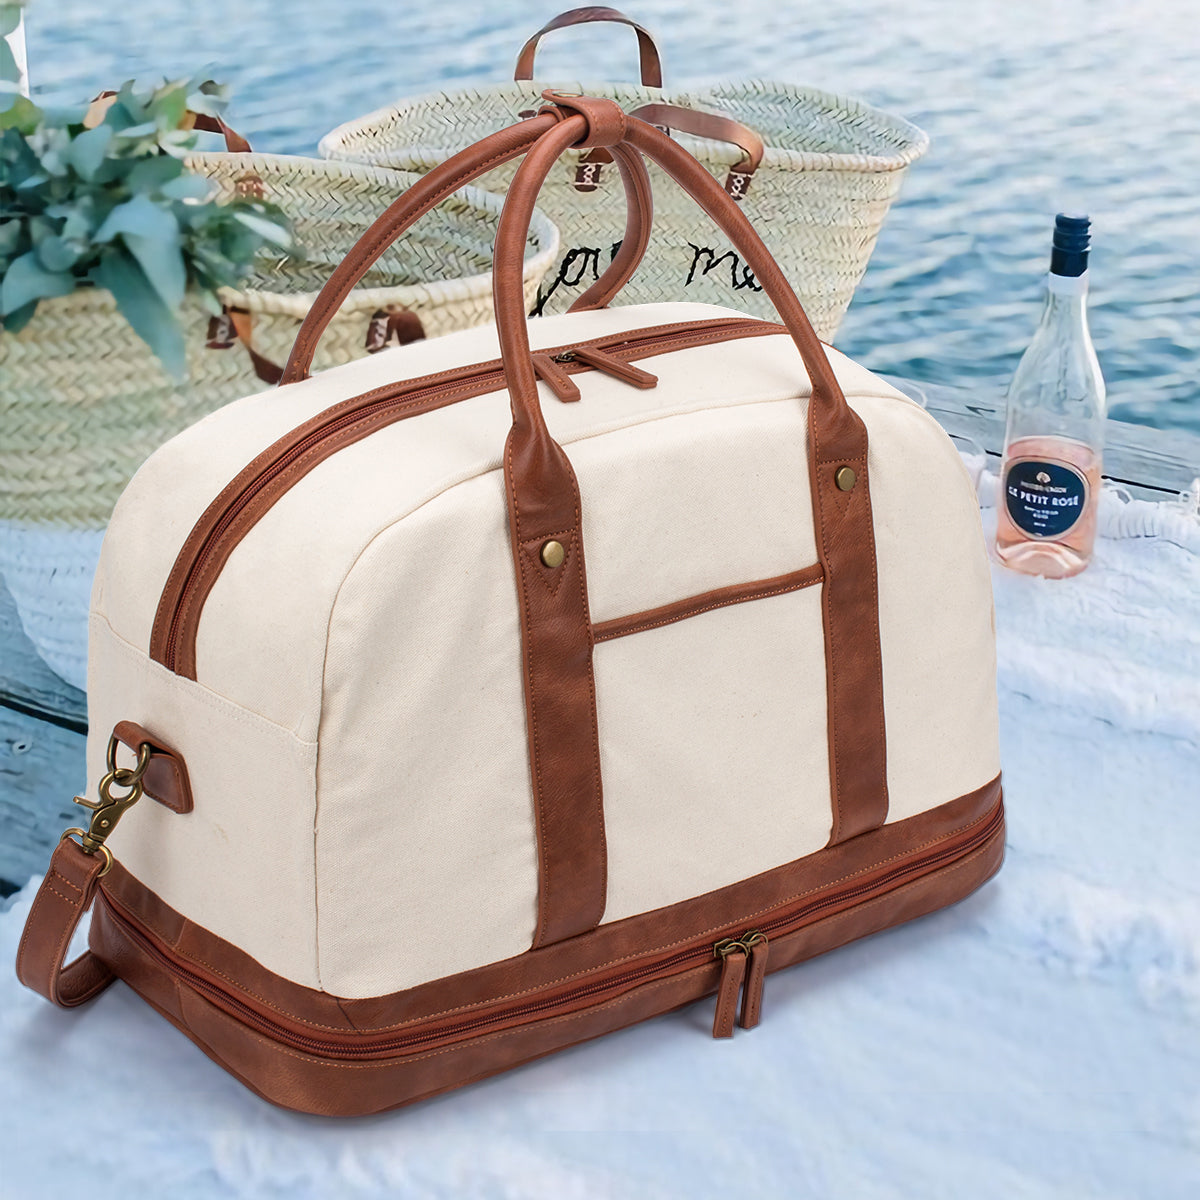 Weekender Bags for Women, BOCMOEO Large Travel Duffel Bags